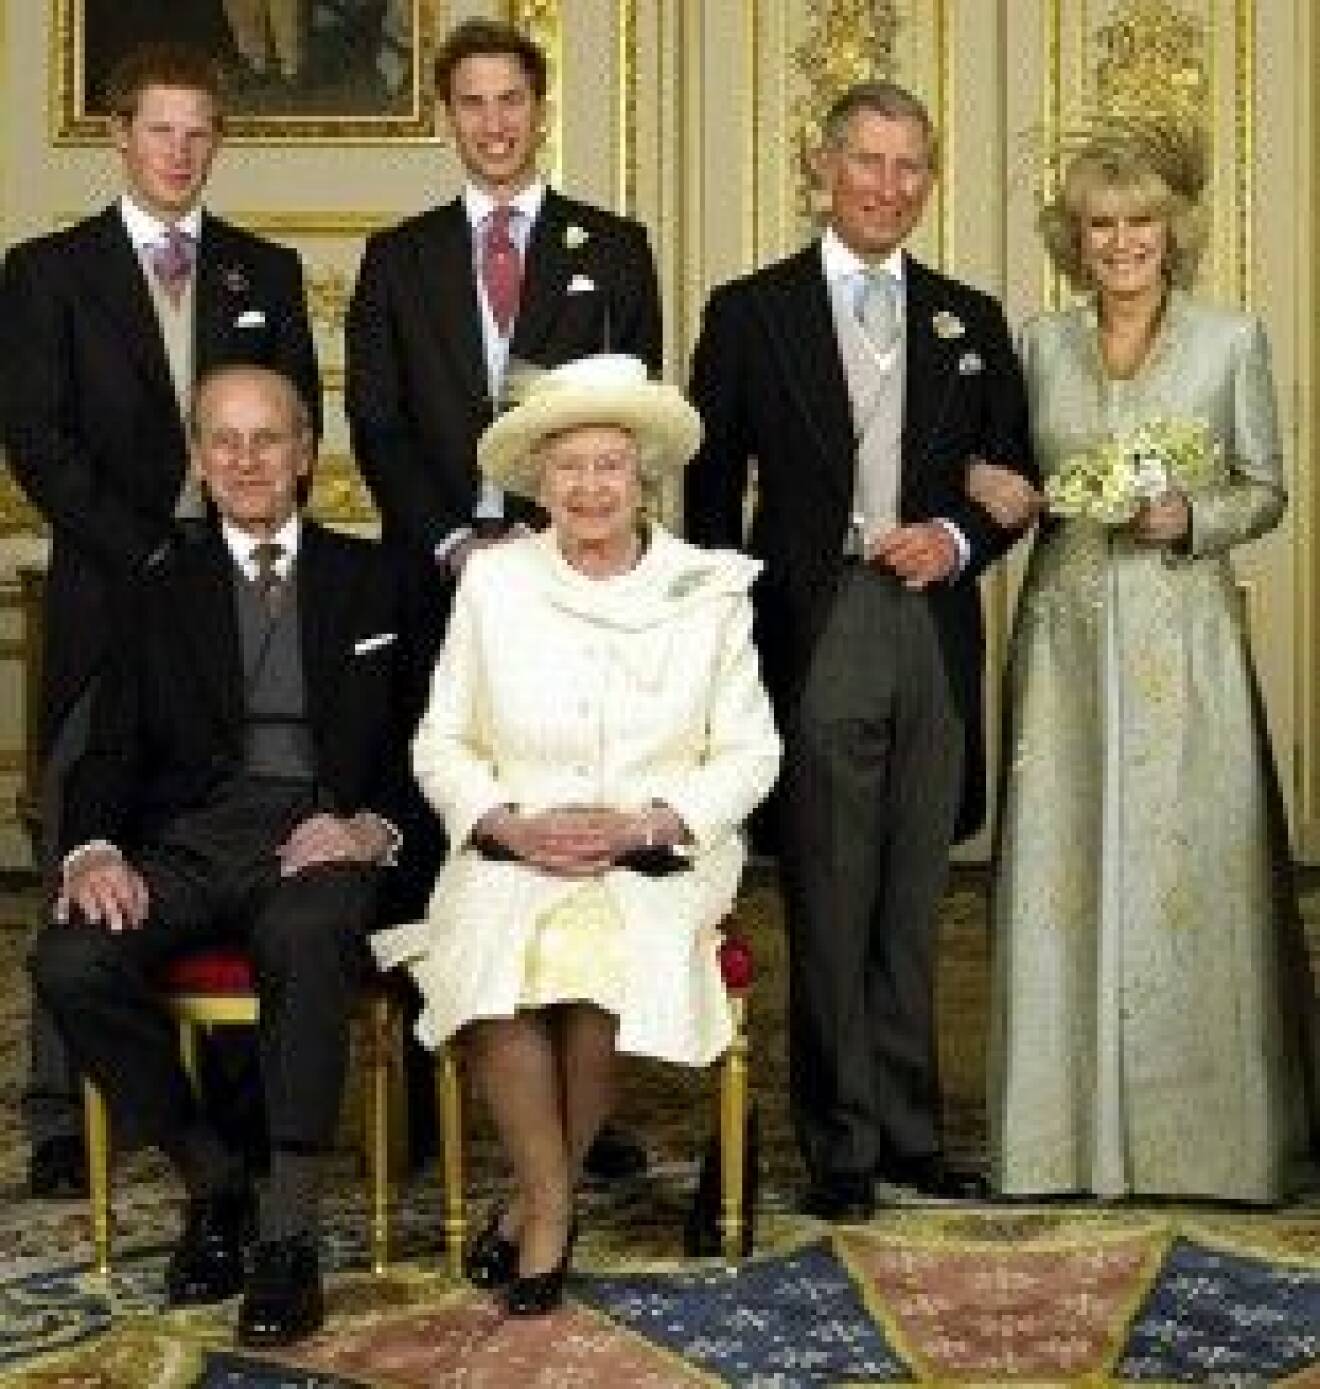 Brittiska kungafamiljen skyddas nu extra efter terrorhot mot dem.